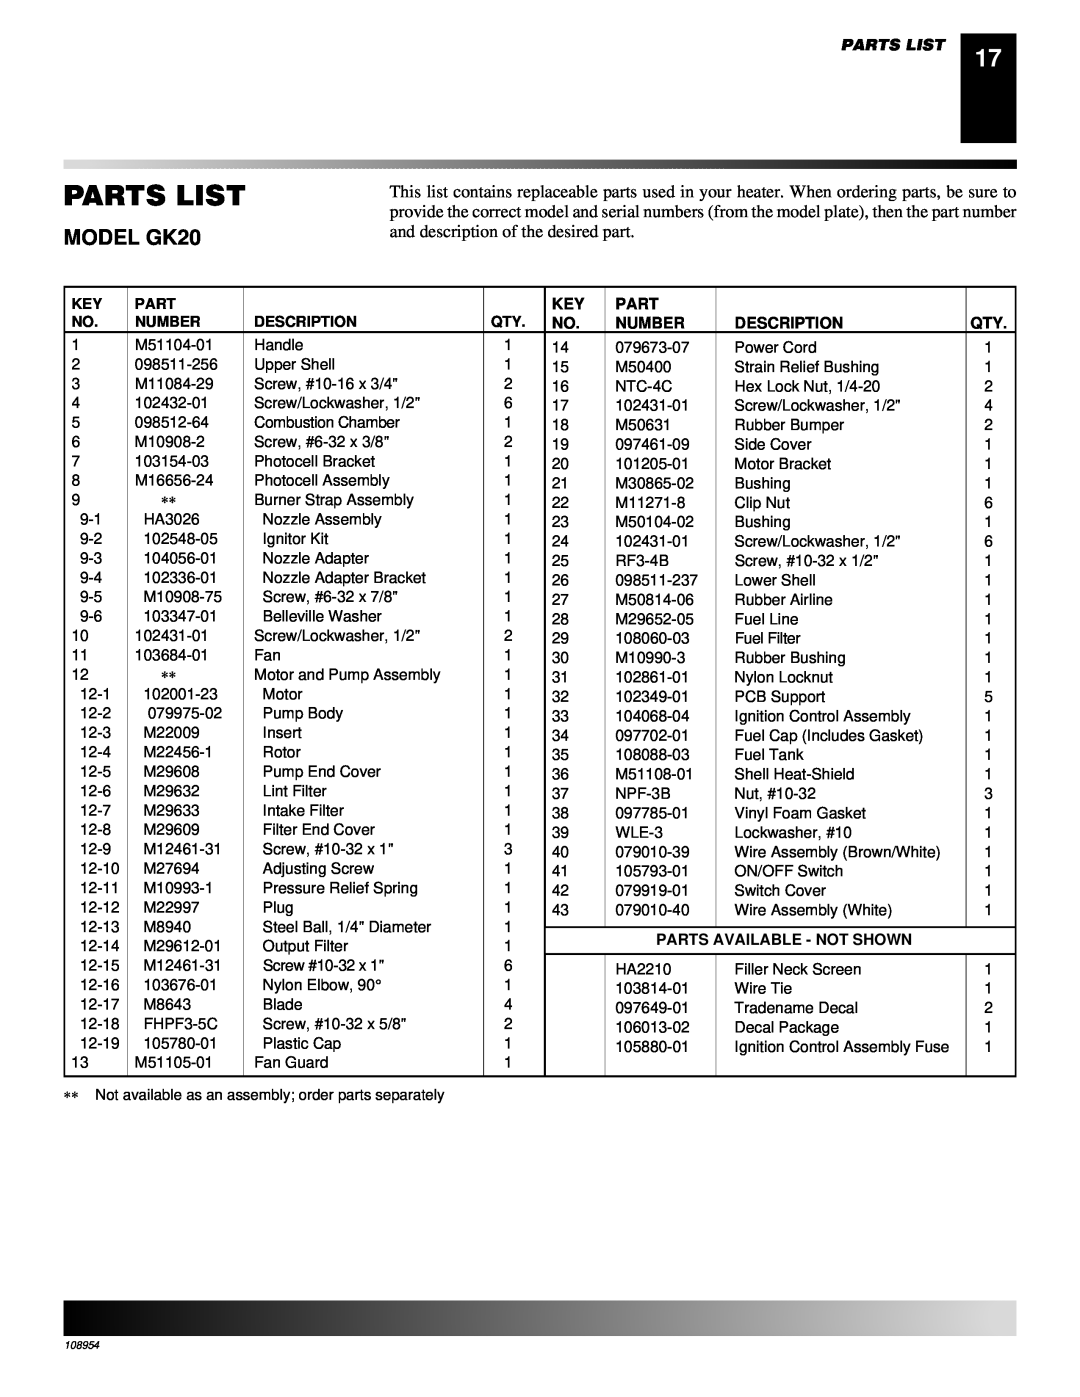 Desa GK30 owner manual Parts List, MODEL GK20 